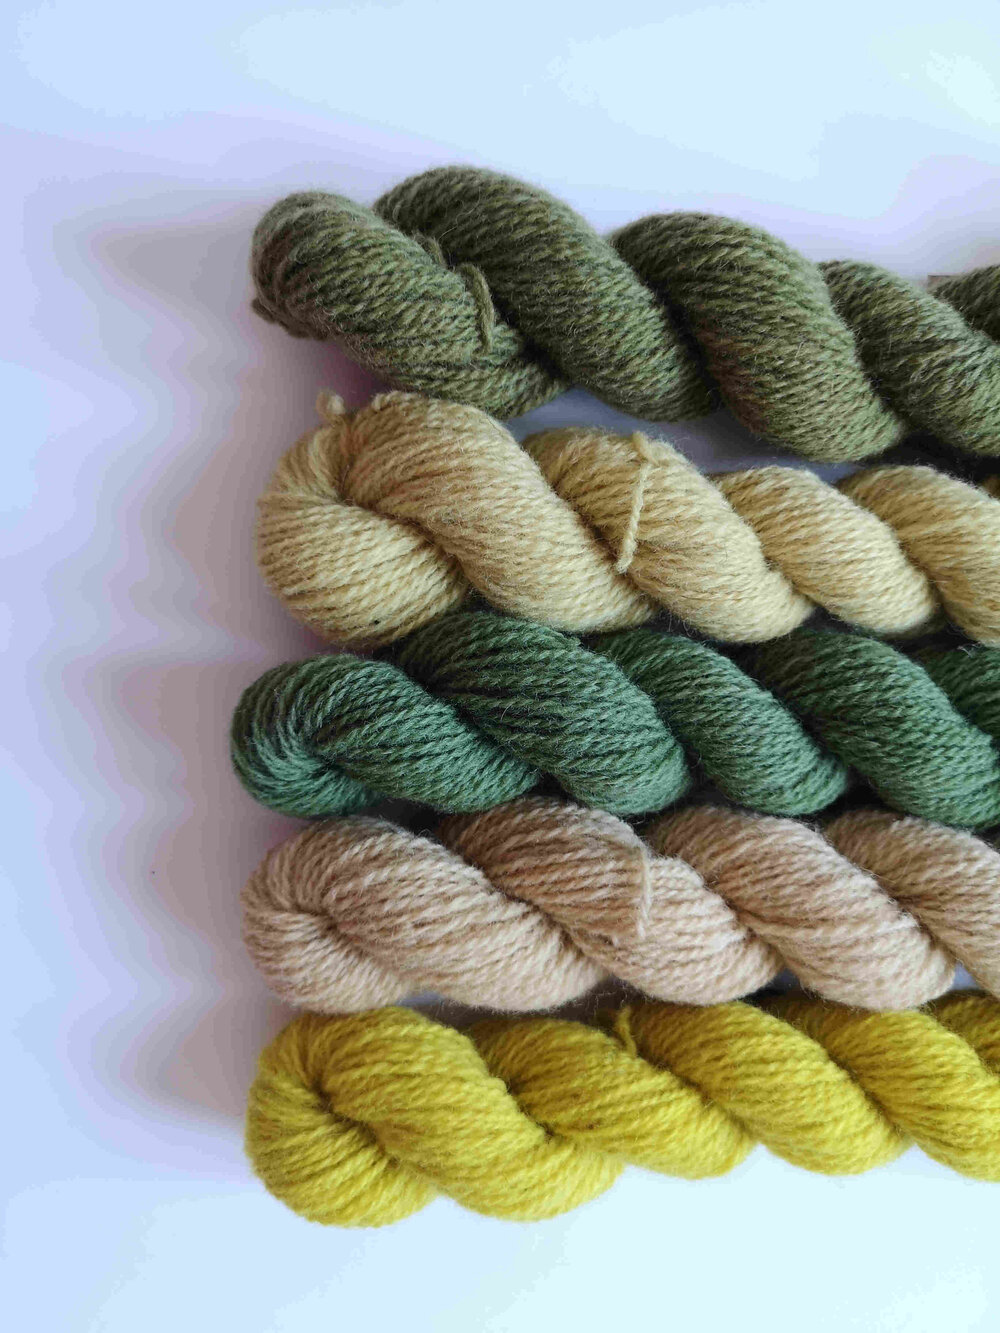 Ria Burns Knitwear Naturally Dyed Yarn Spring Yarn Club Mini Skeins 1 web.jpg